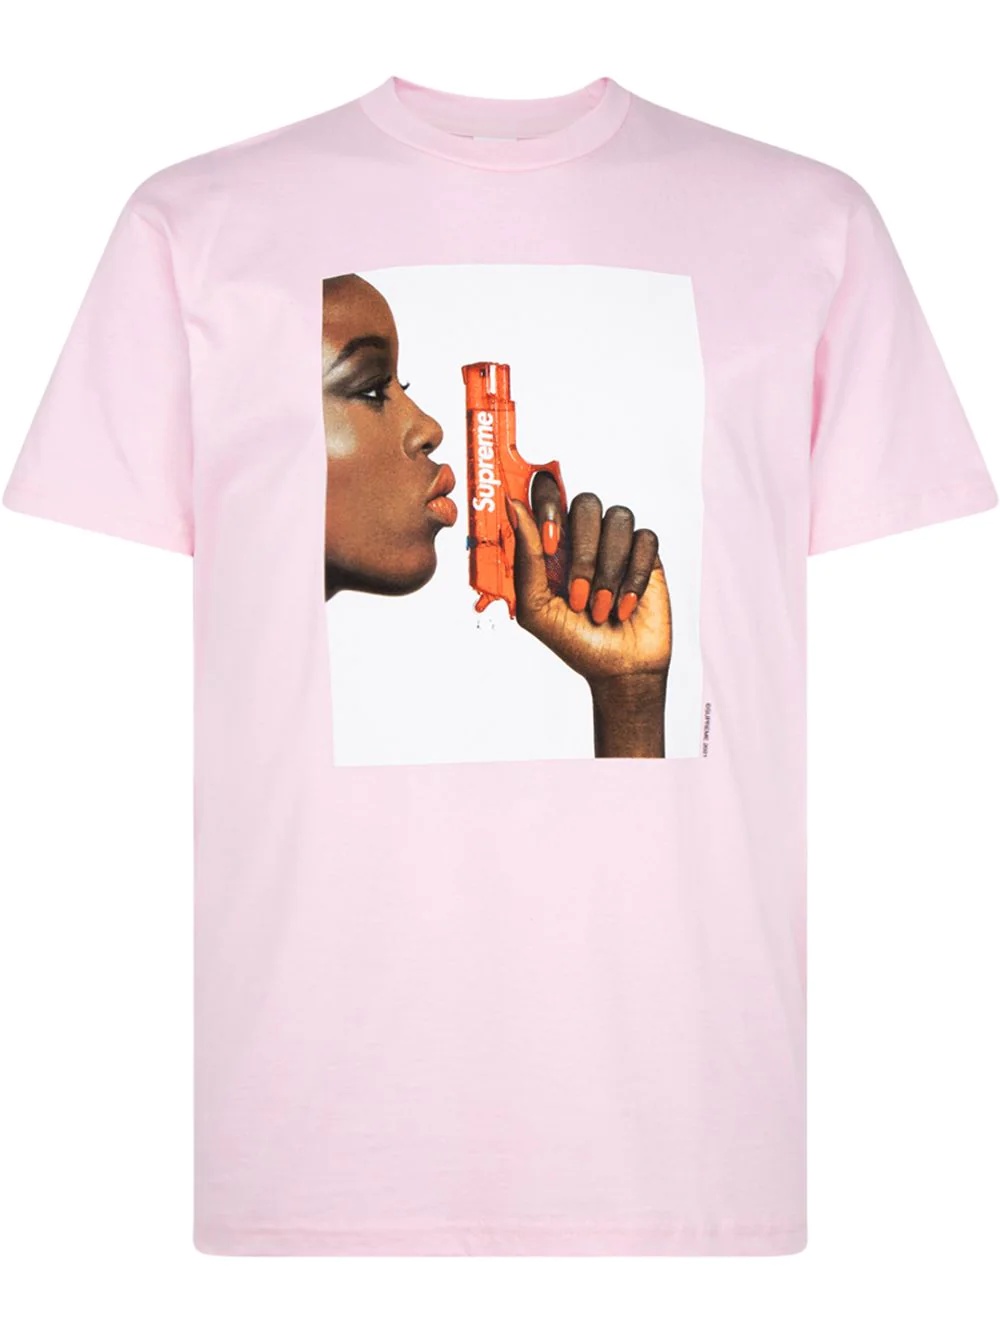 Water Pistol T-shirt - 1